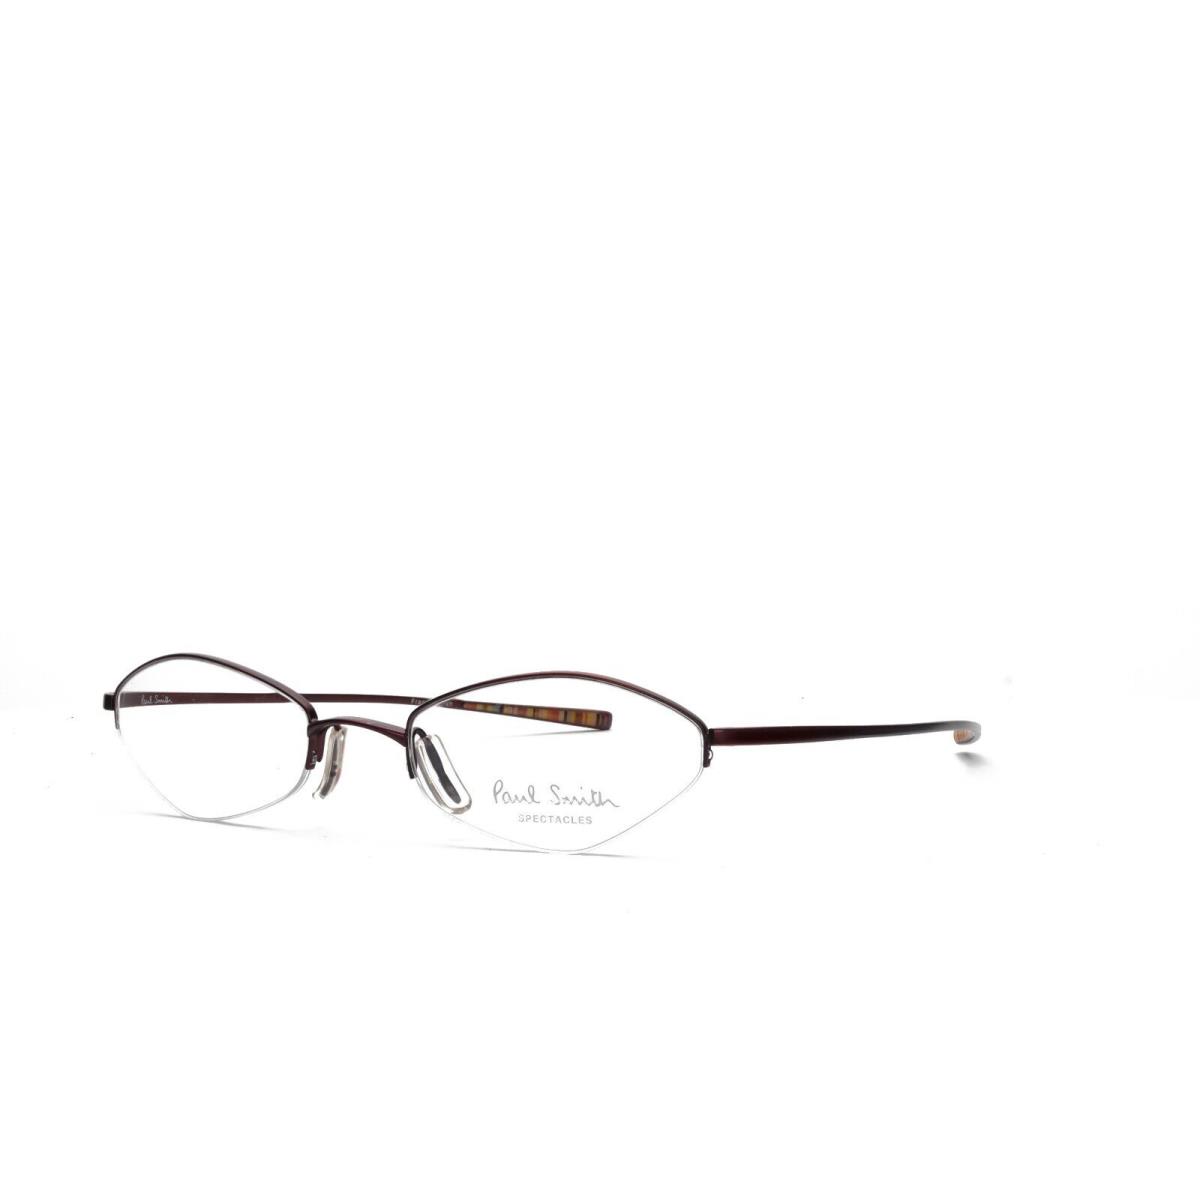 Paul Smith 179 Rou 46-19-140 Pink Silver Vtg Vintage Eyeglasses Frames